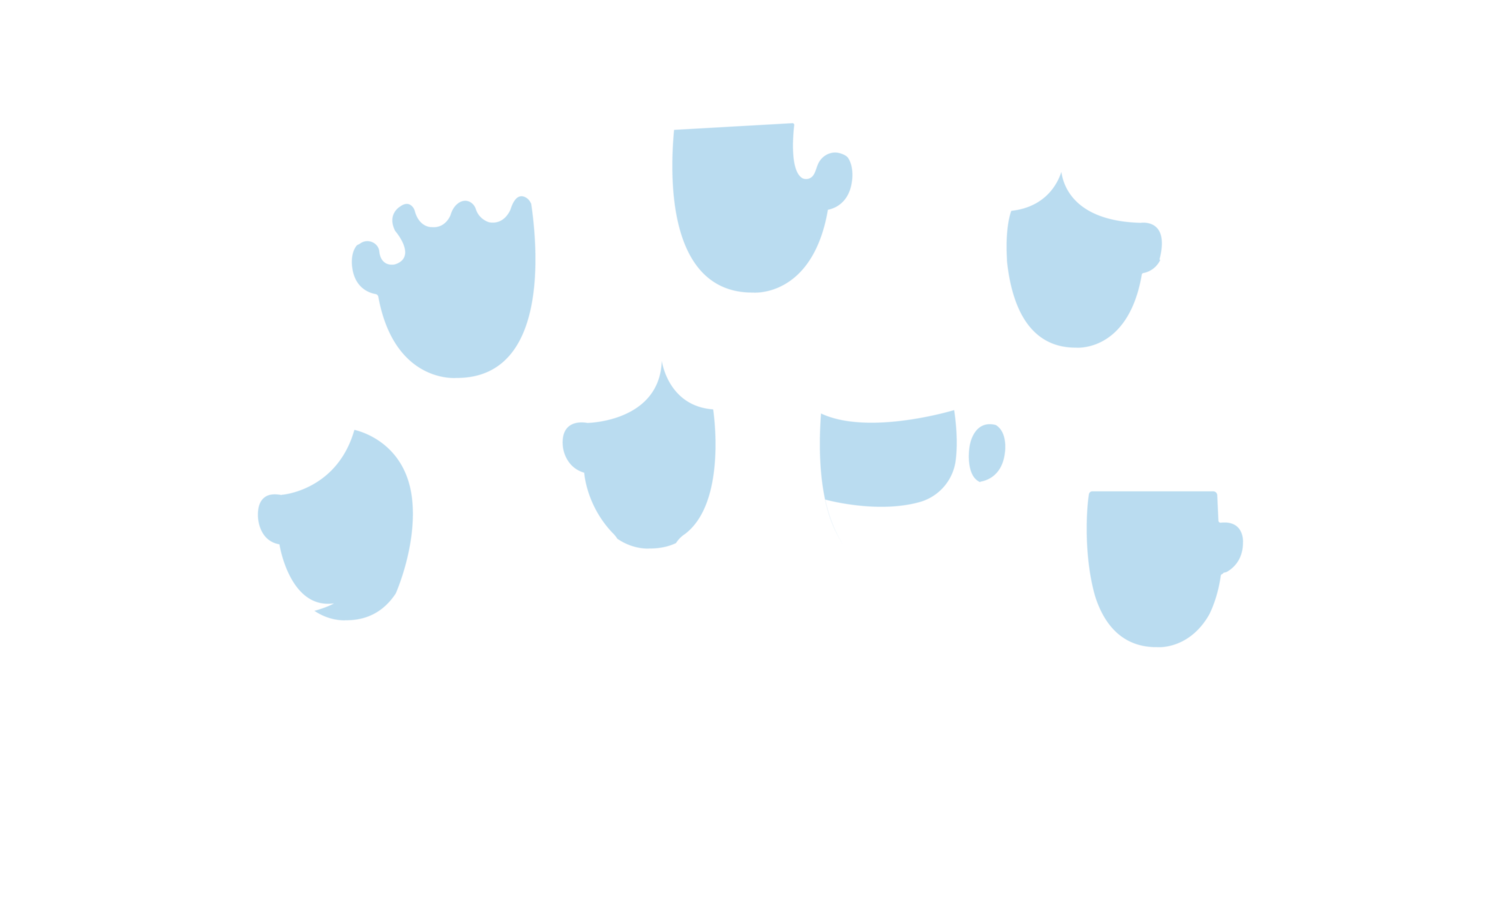 COMMUNITIES SPEAK